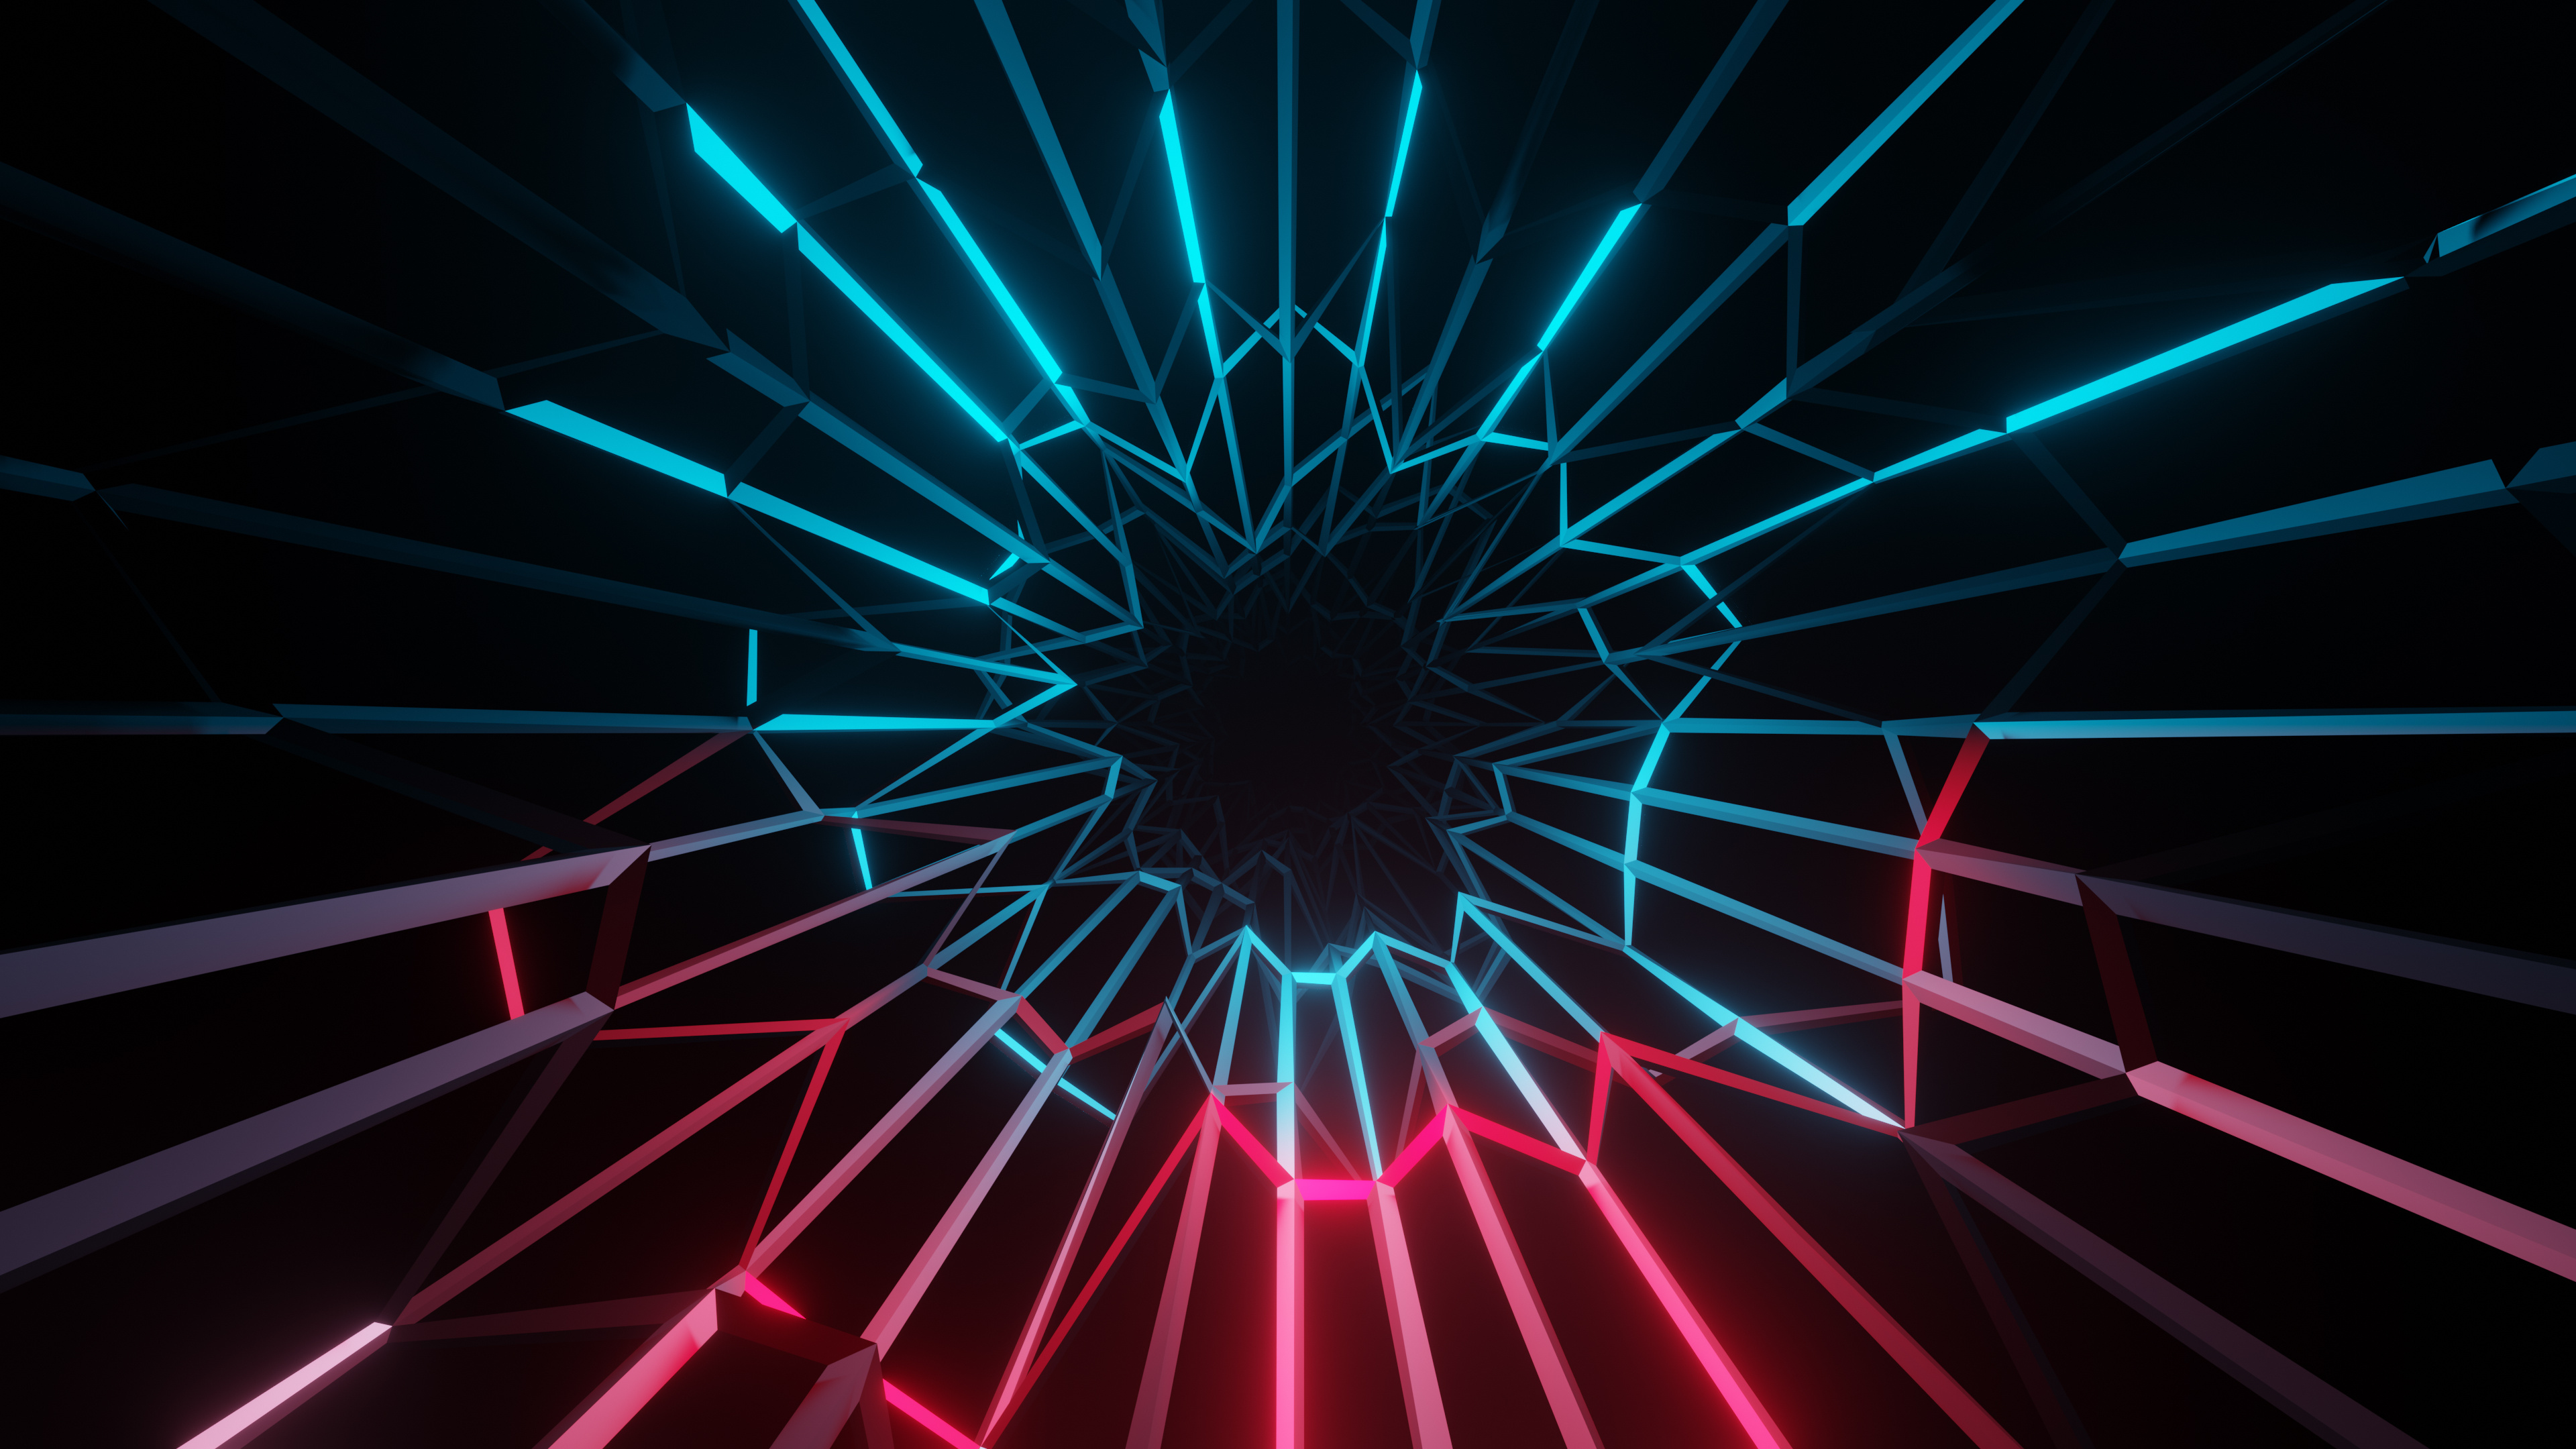 Neon Abstract, Electric Wallpaper, Neon Colors, Dark Background, 3840x2160 4K Desktop